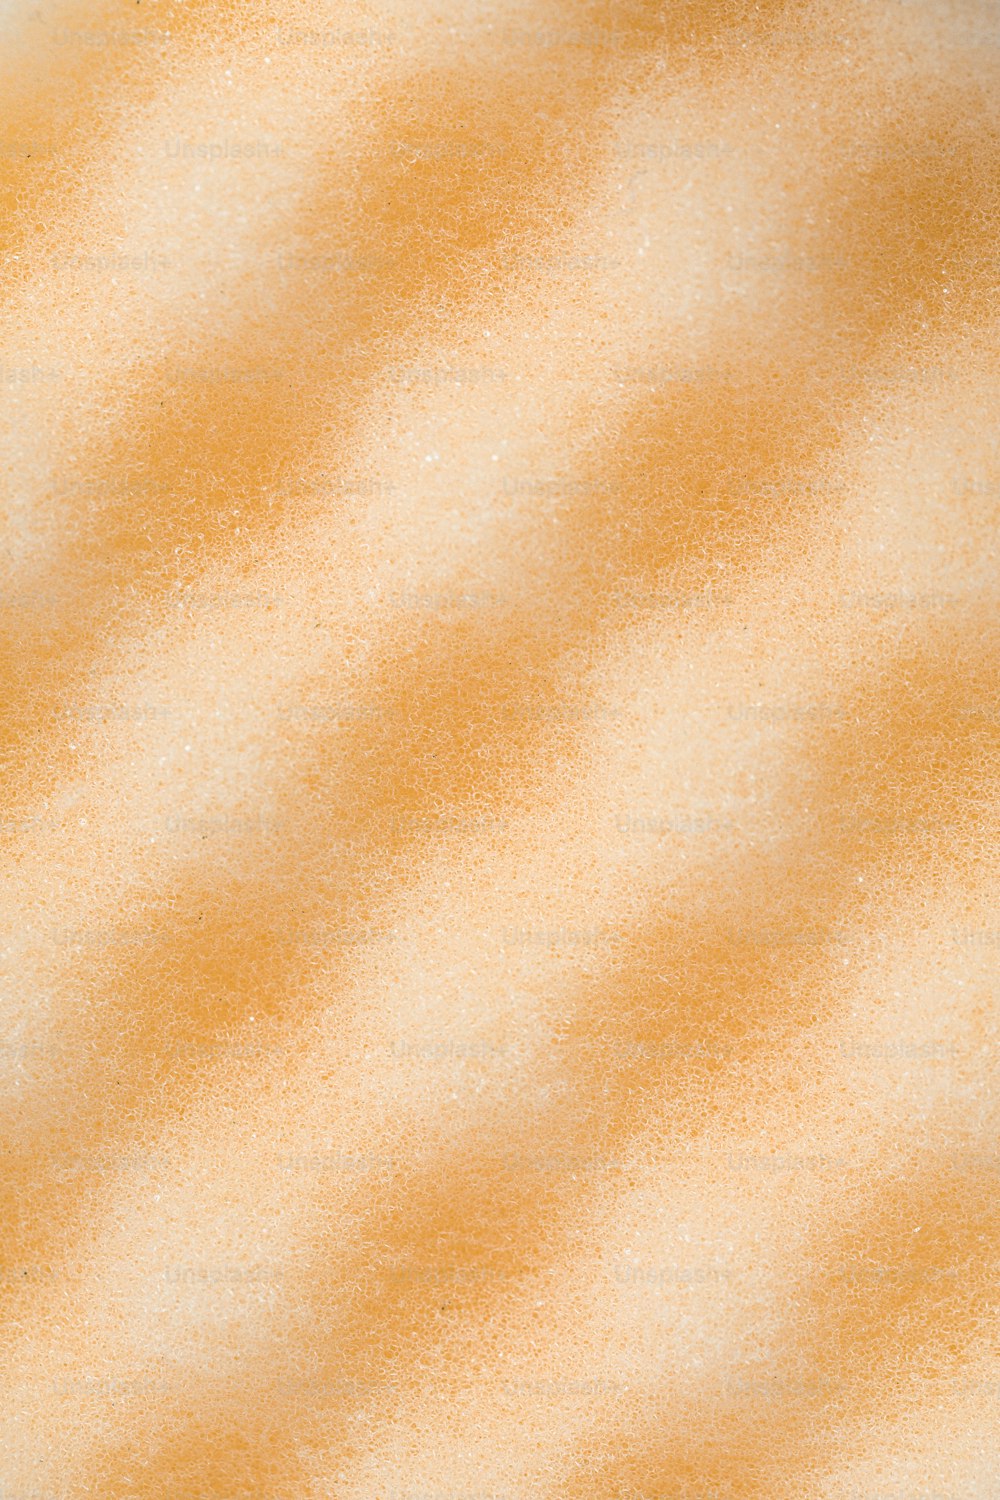 eine Nahaufnahme eines orange-weißen Hintergrunds